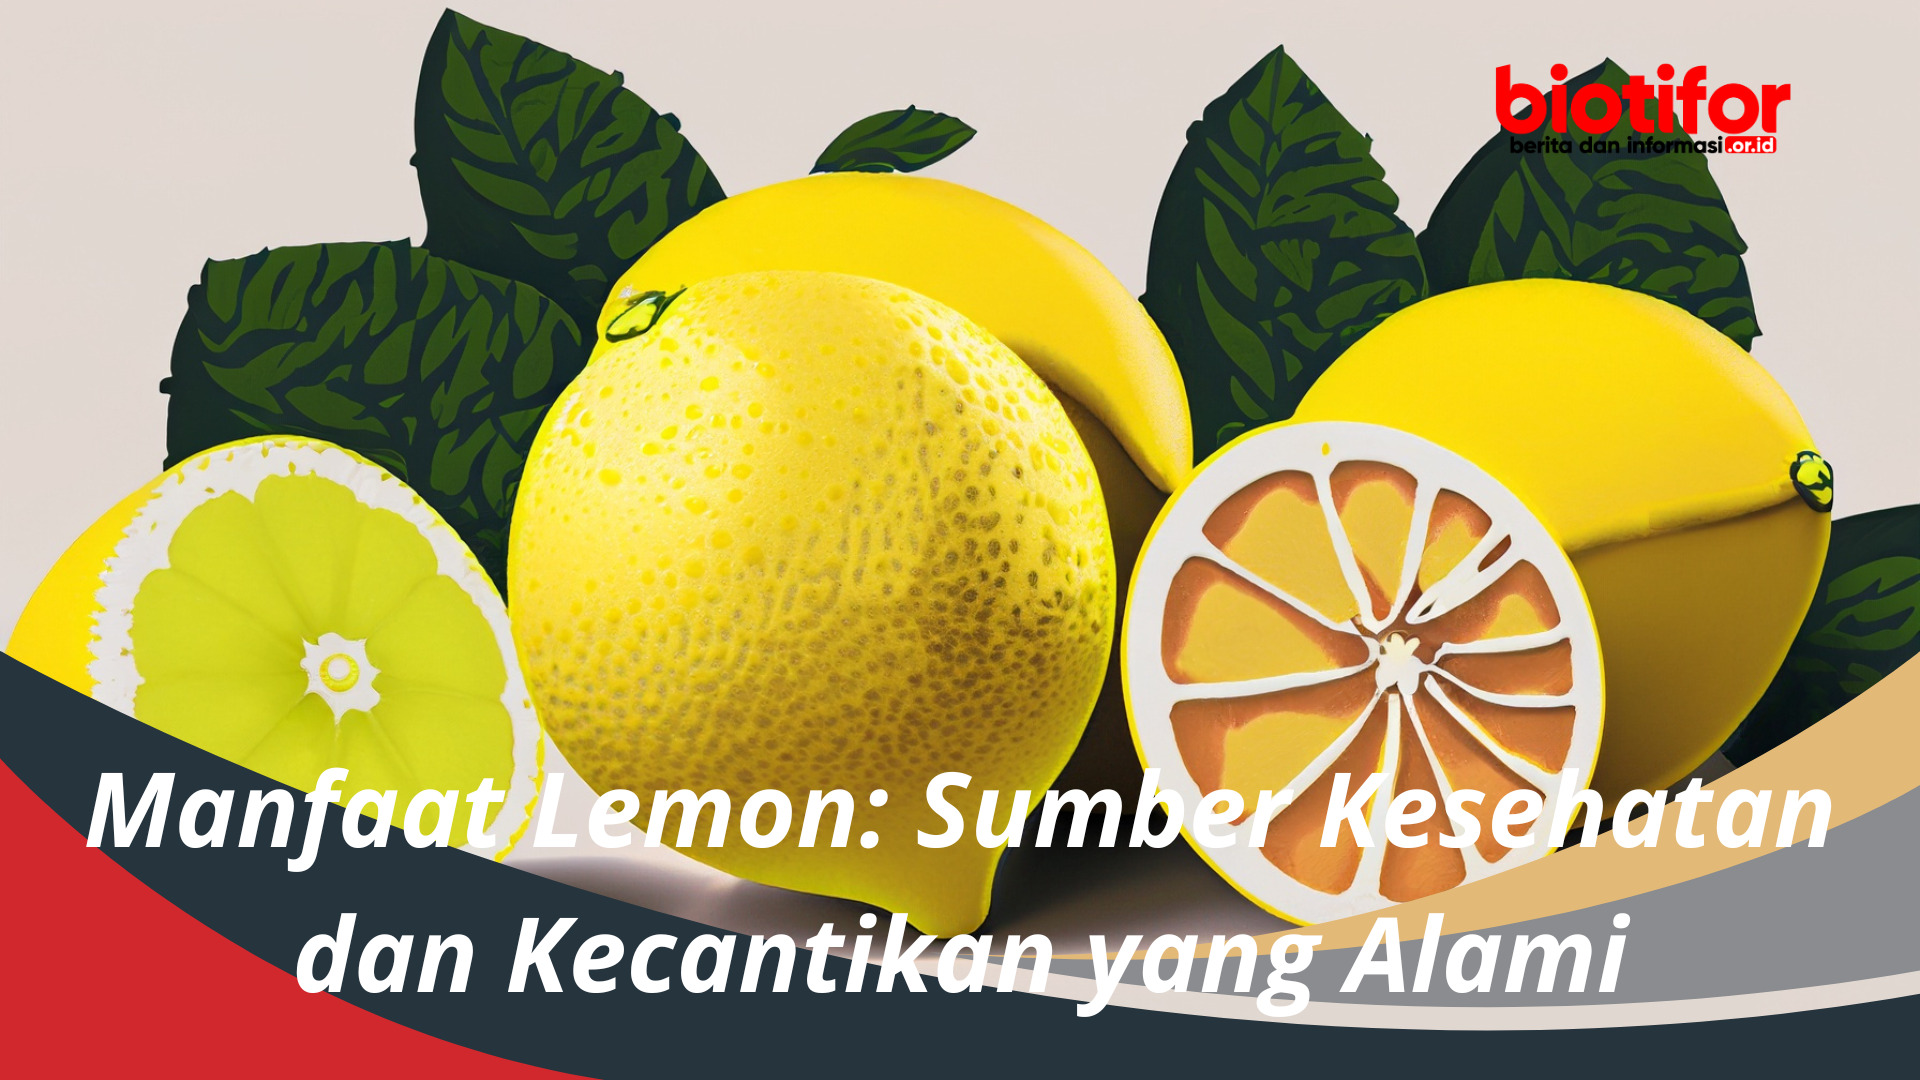 Manfaat Lemon Sumber Kesehatan dan Kecantikan yang Alami